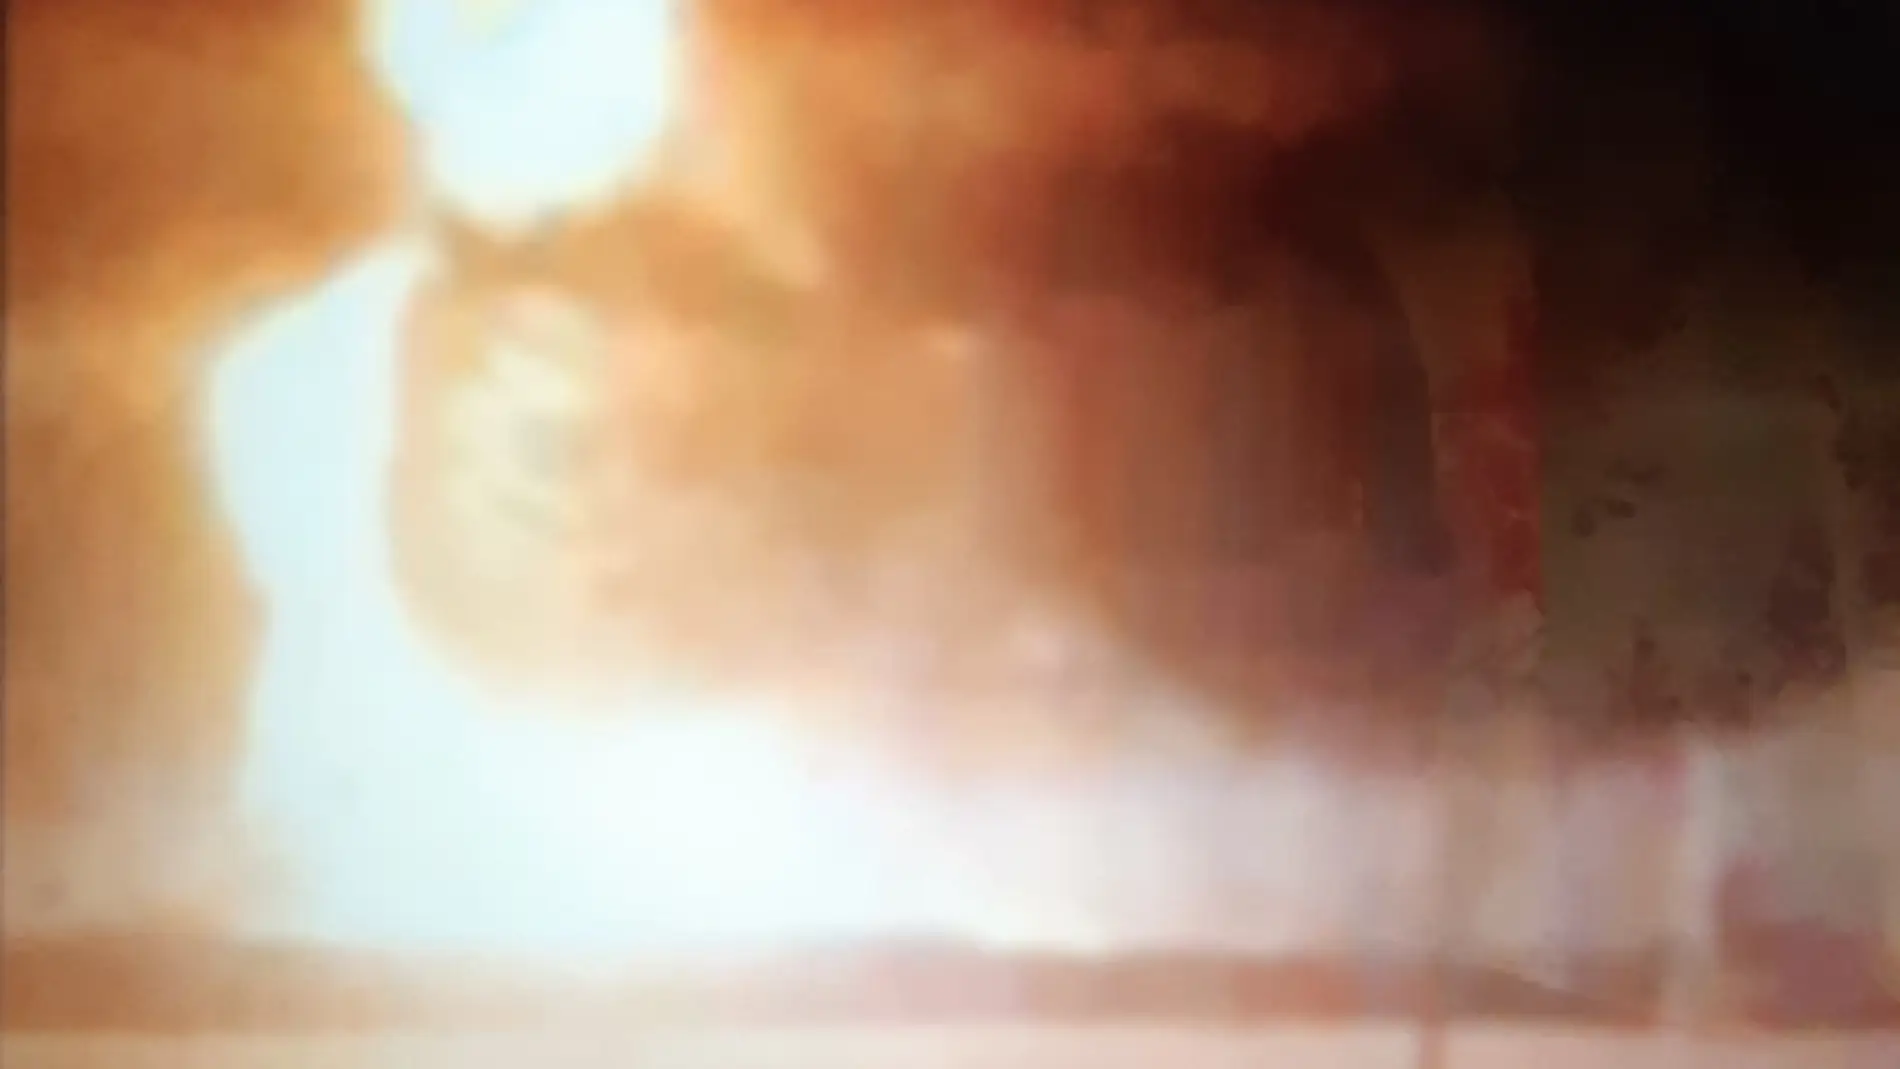 Imagen del incendio captada de un video que se puede ver en las redes sociales